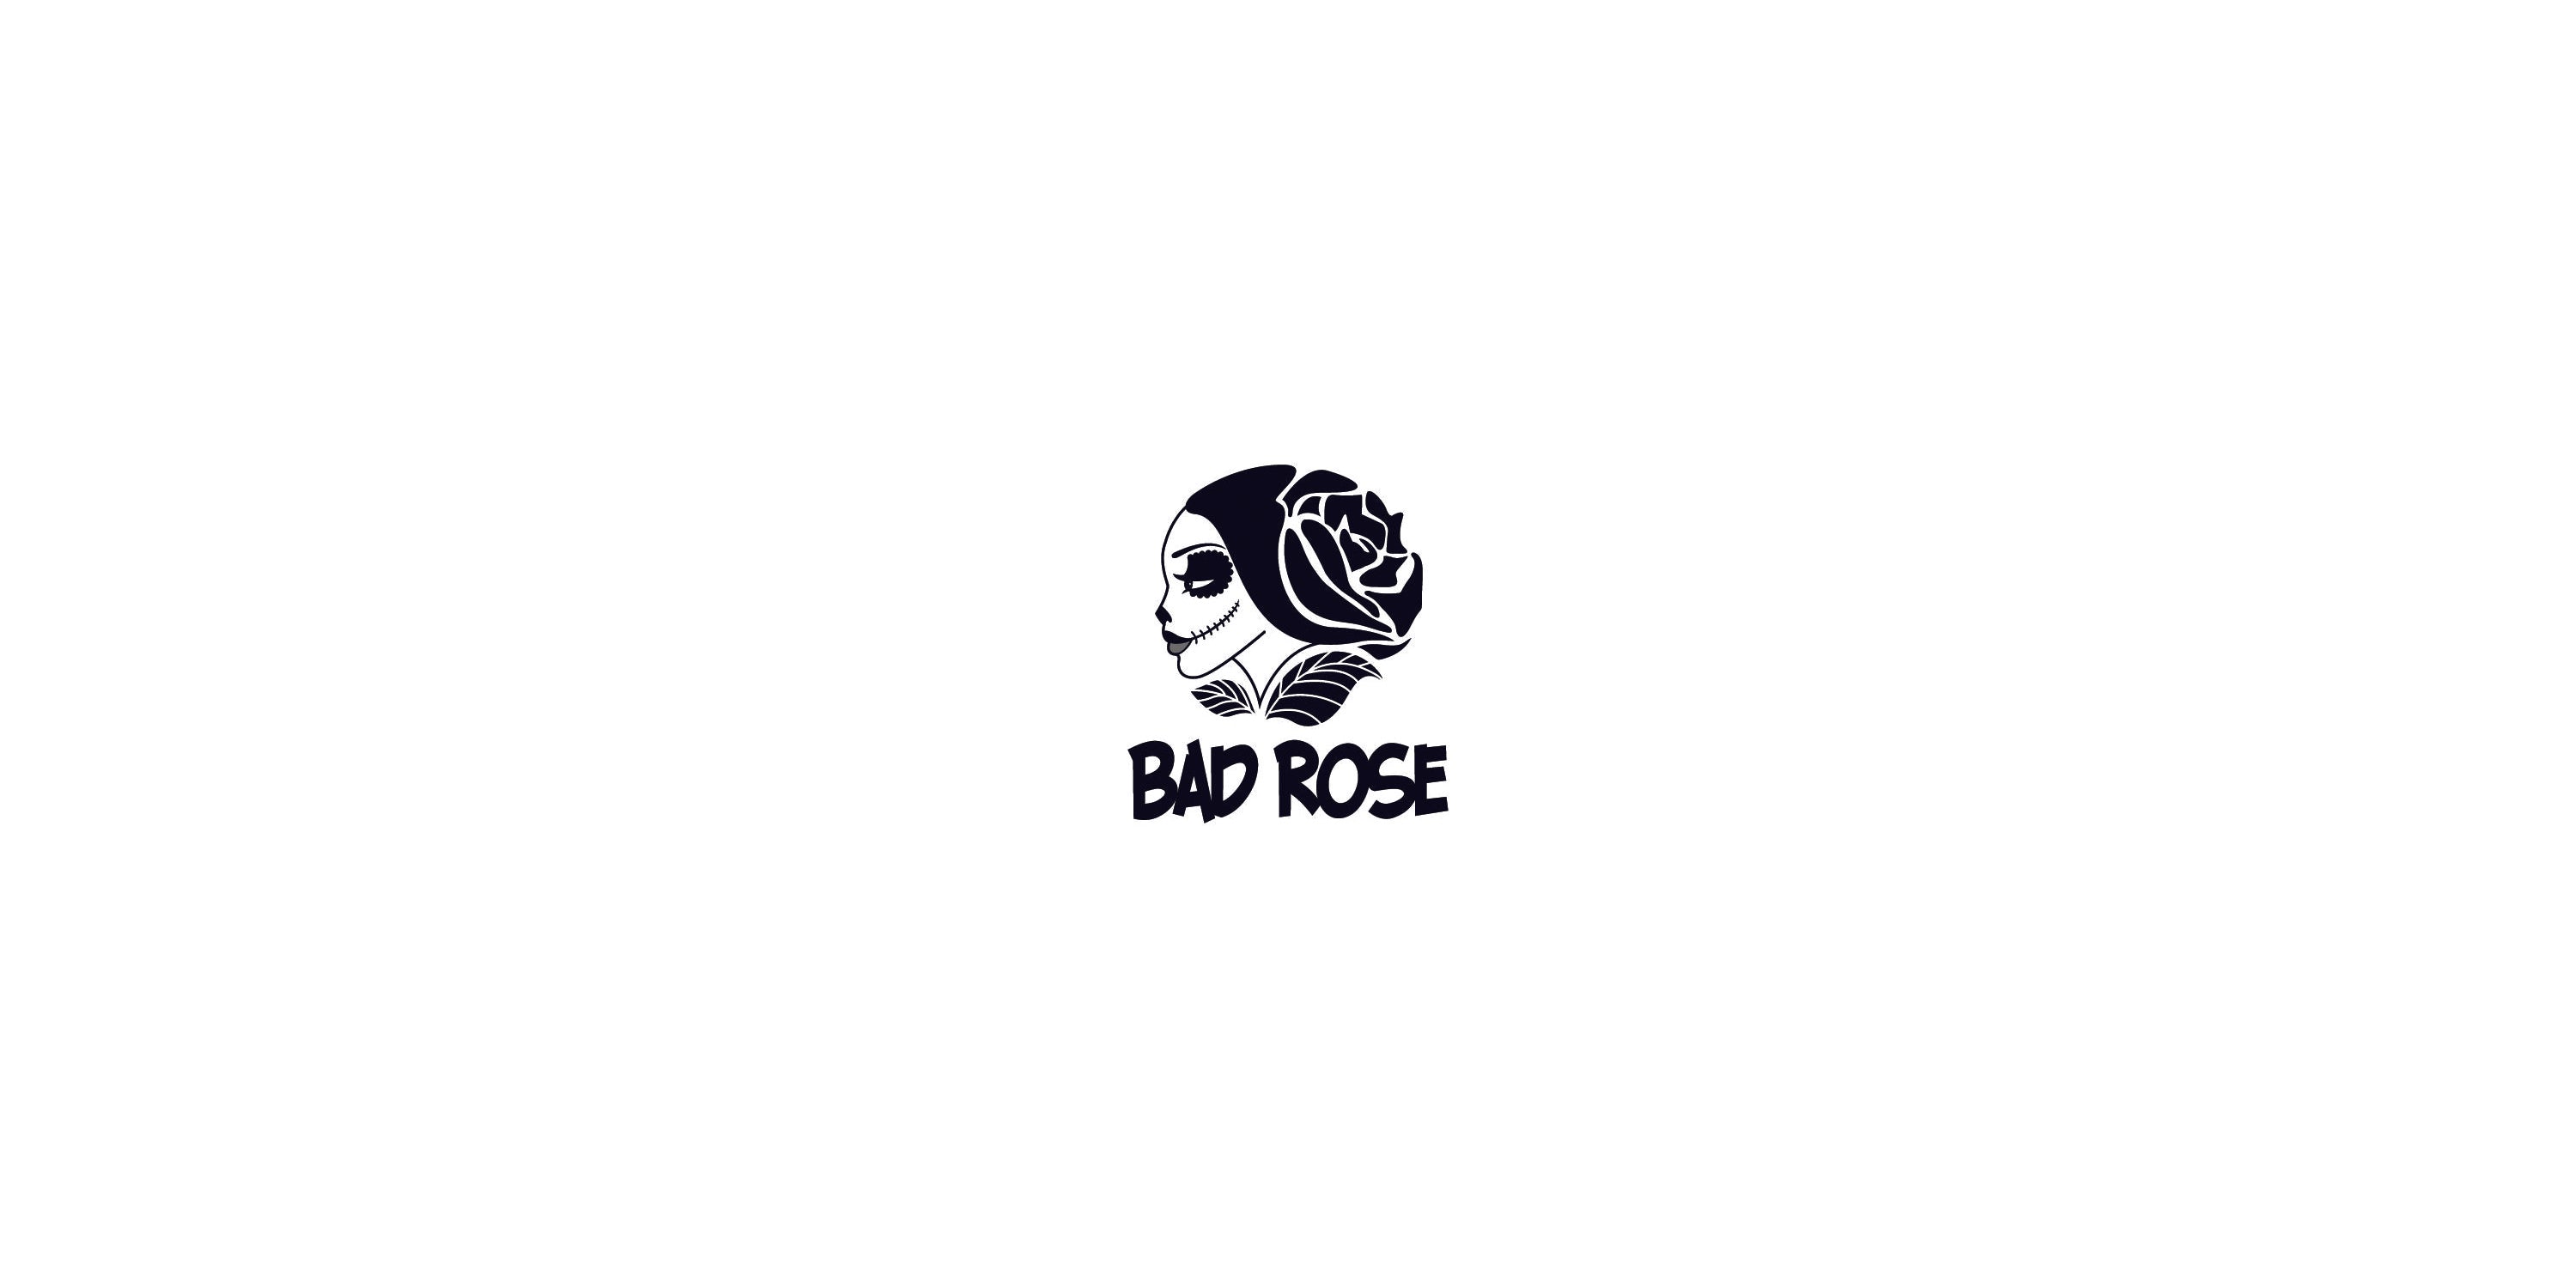 Bad Rose logo